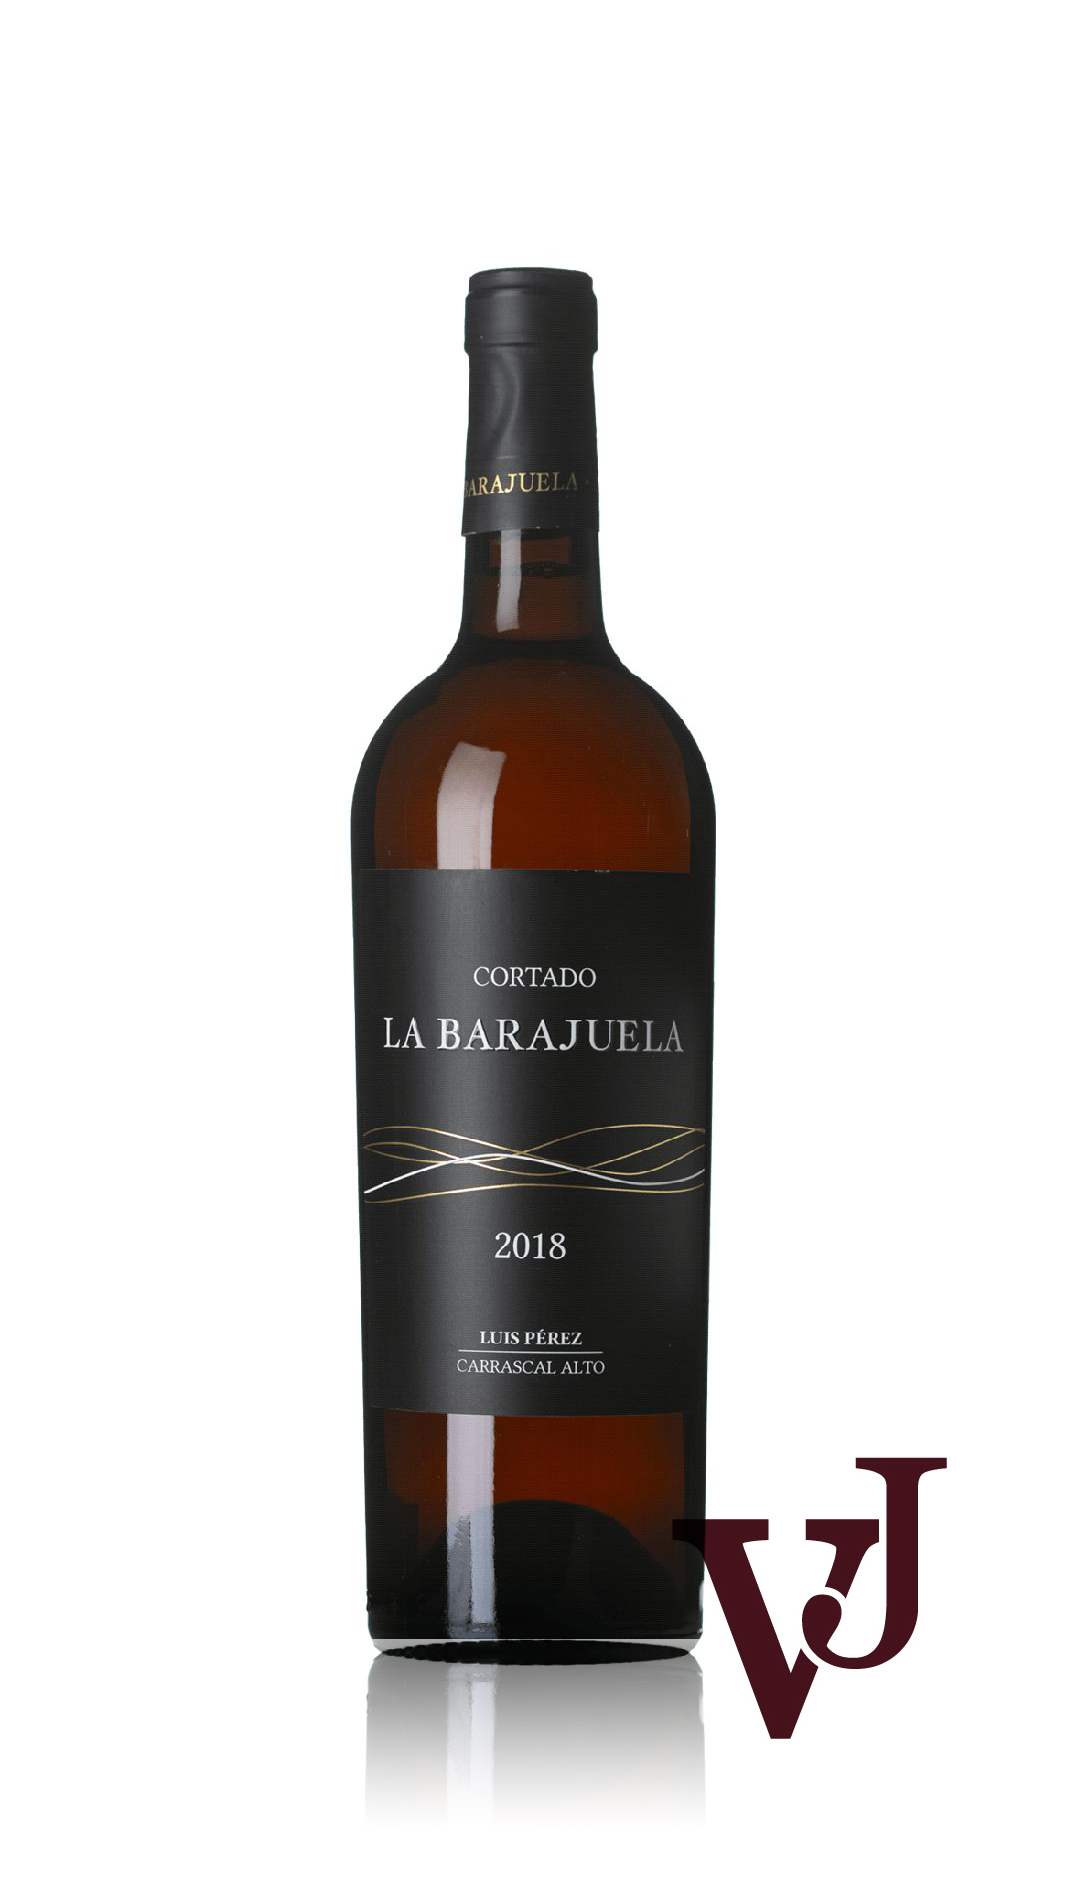 Övrigt Vin - La Barajuela Cortado artikel nummer 9430501 från producenten Bodegas Luis Pérez S.L. från Spanien.